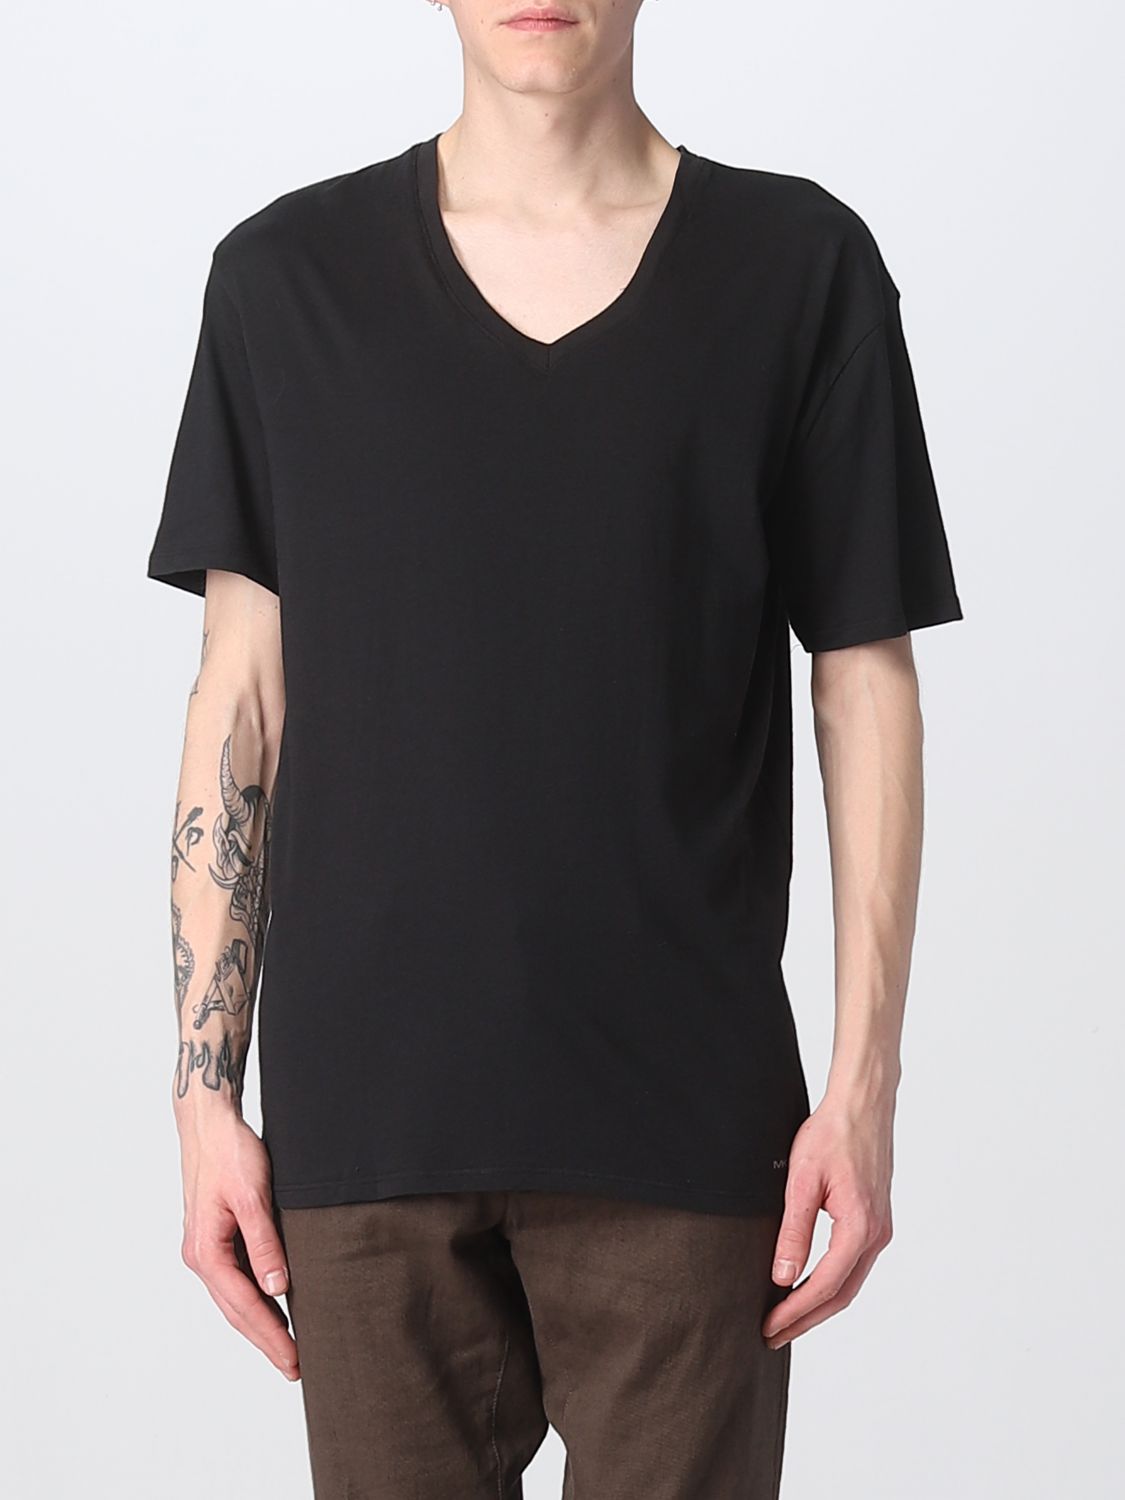 MICHAEL KORS: t-shirt for man - Black | Michael Kors t-shirt BR2V001023  online on 